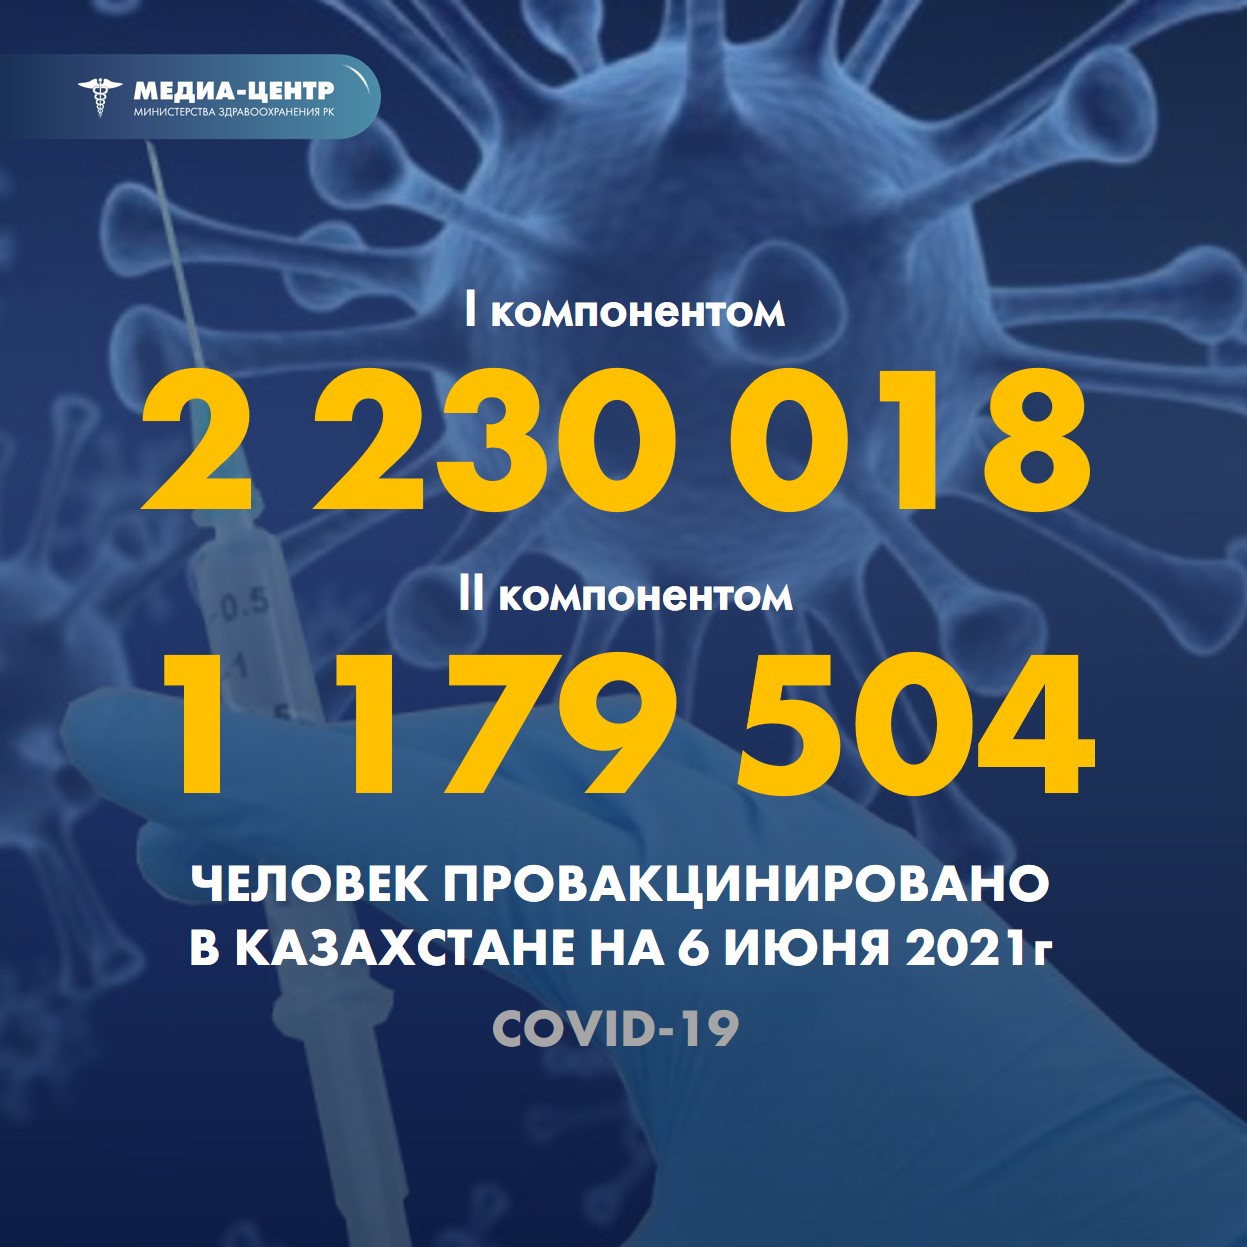 Информация о проведении вакцинации населения против КВИ на 06.06.2021 г. в разрезе регионов